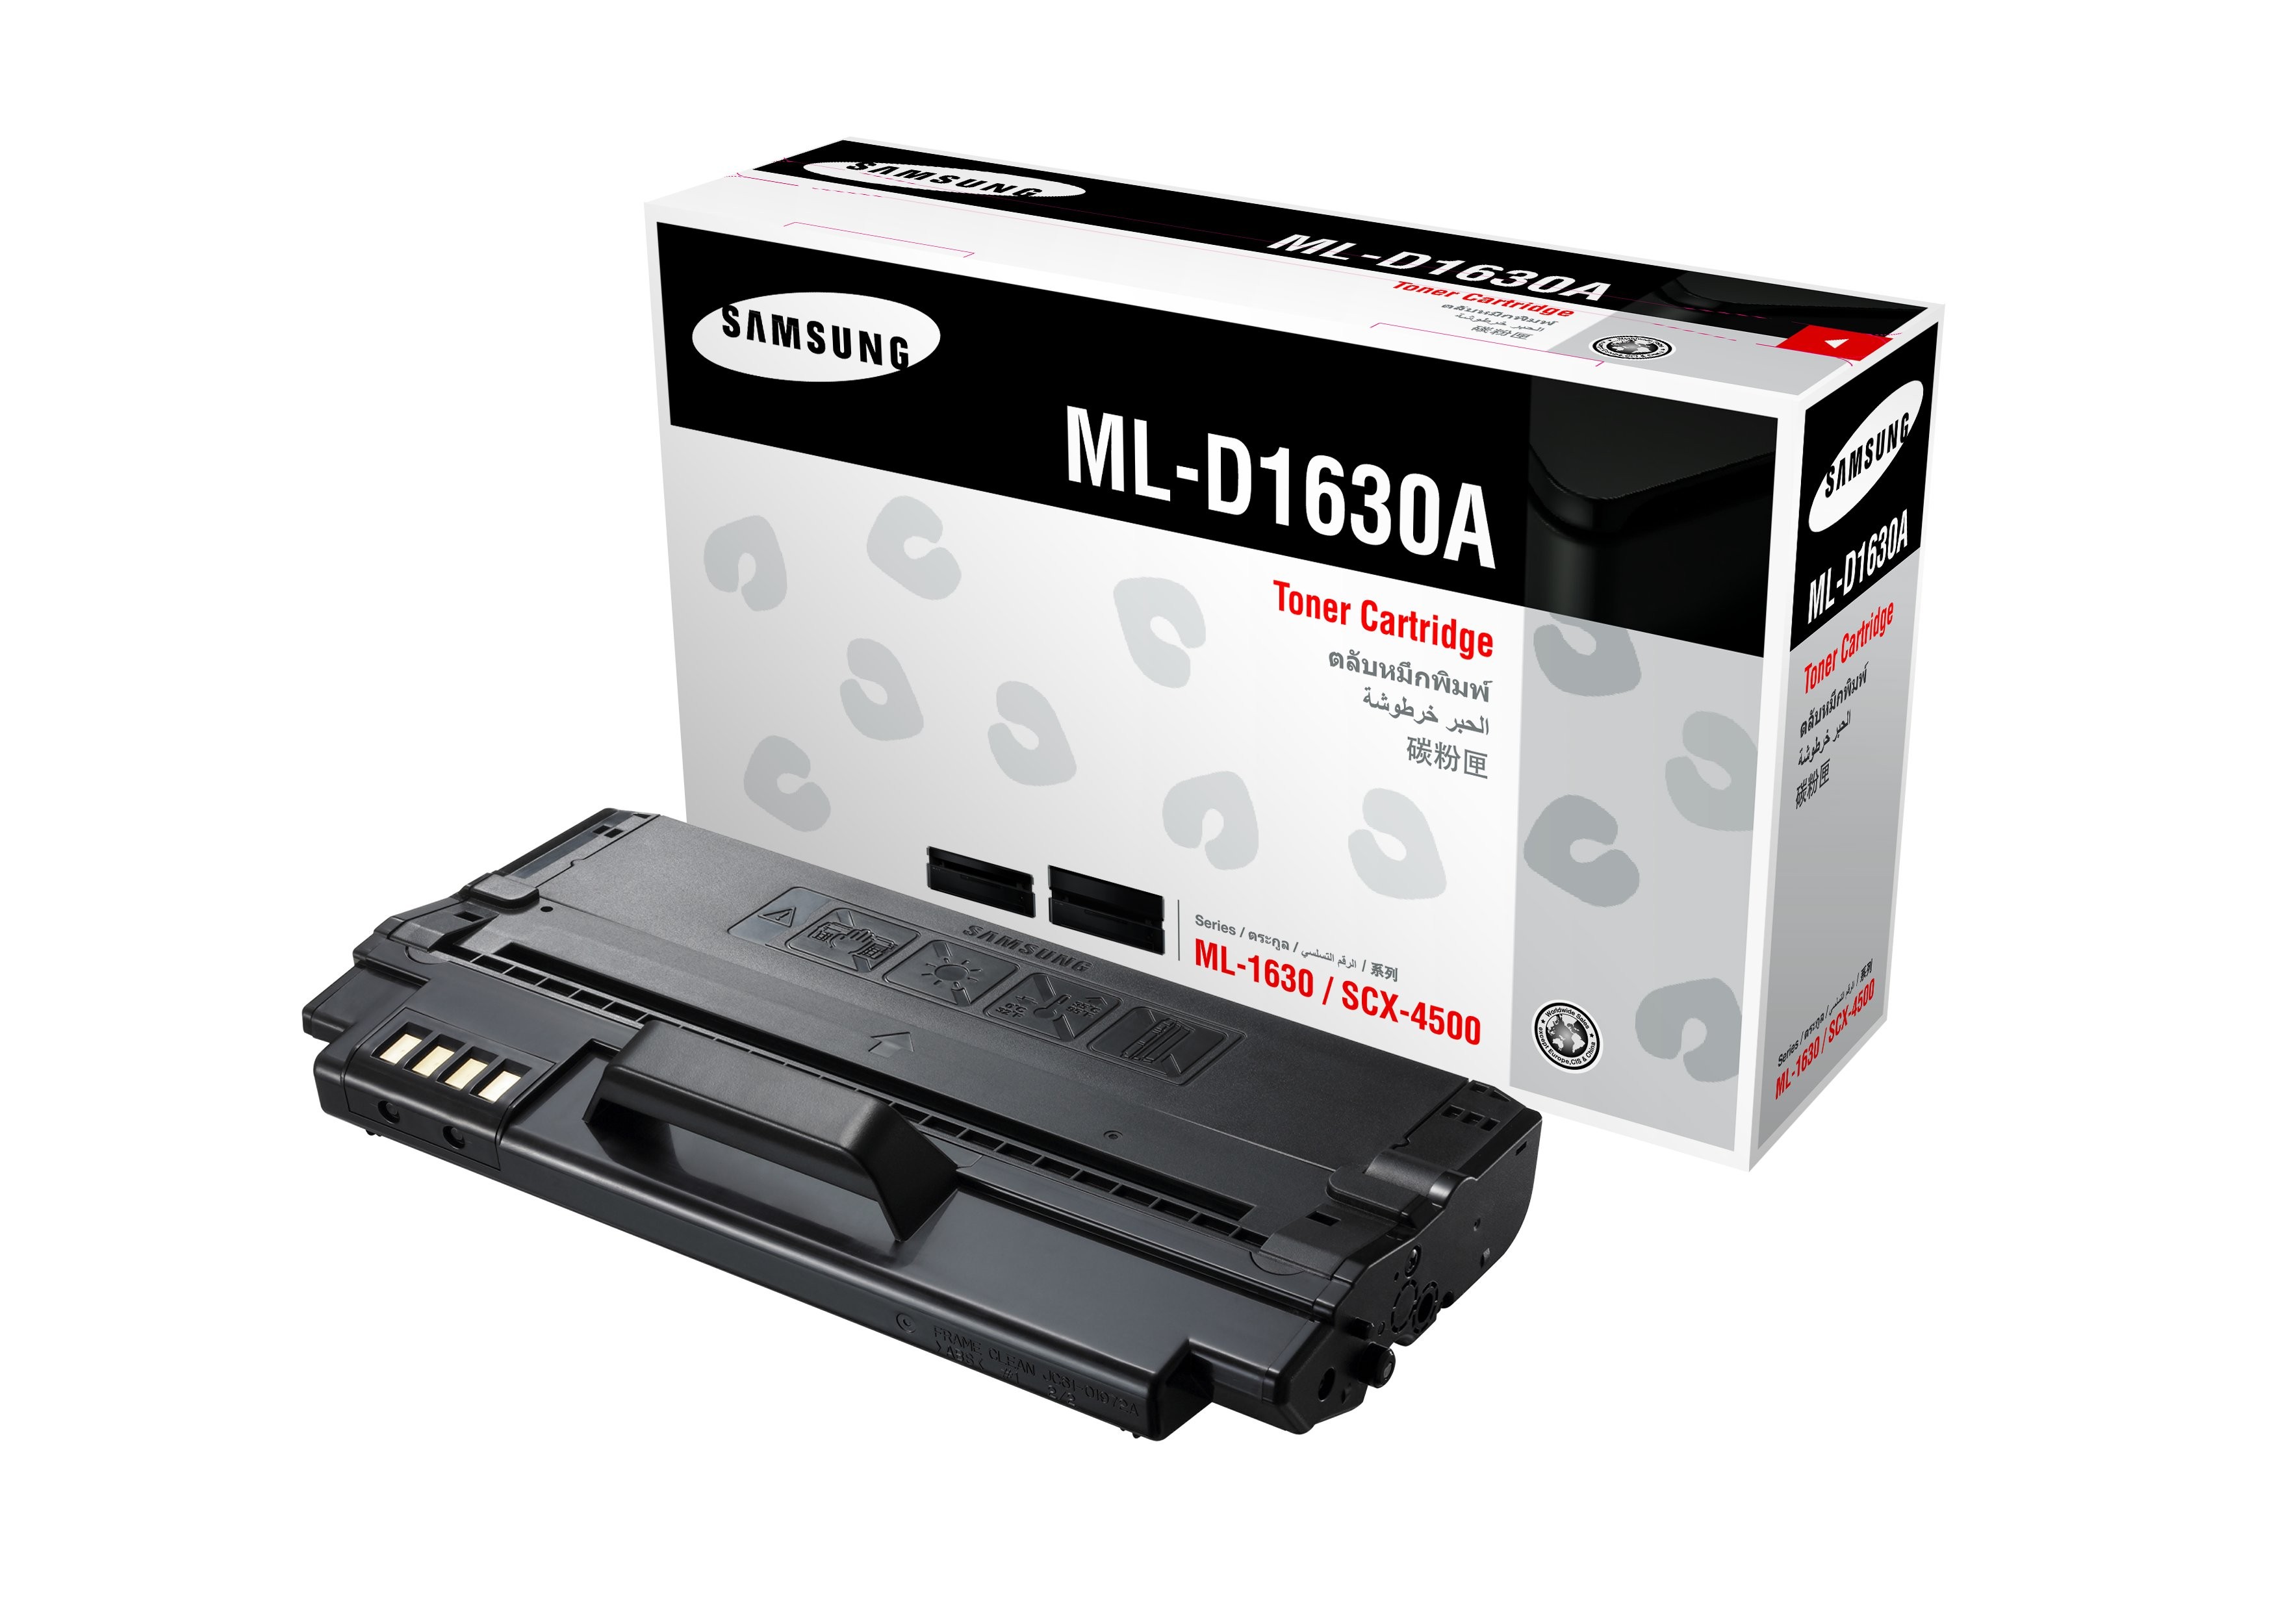 Toner ML-D1630A original Samsung MLD1630A